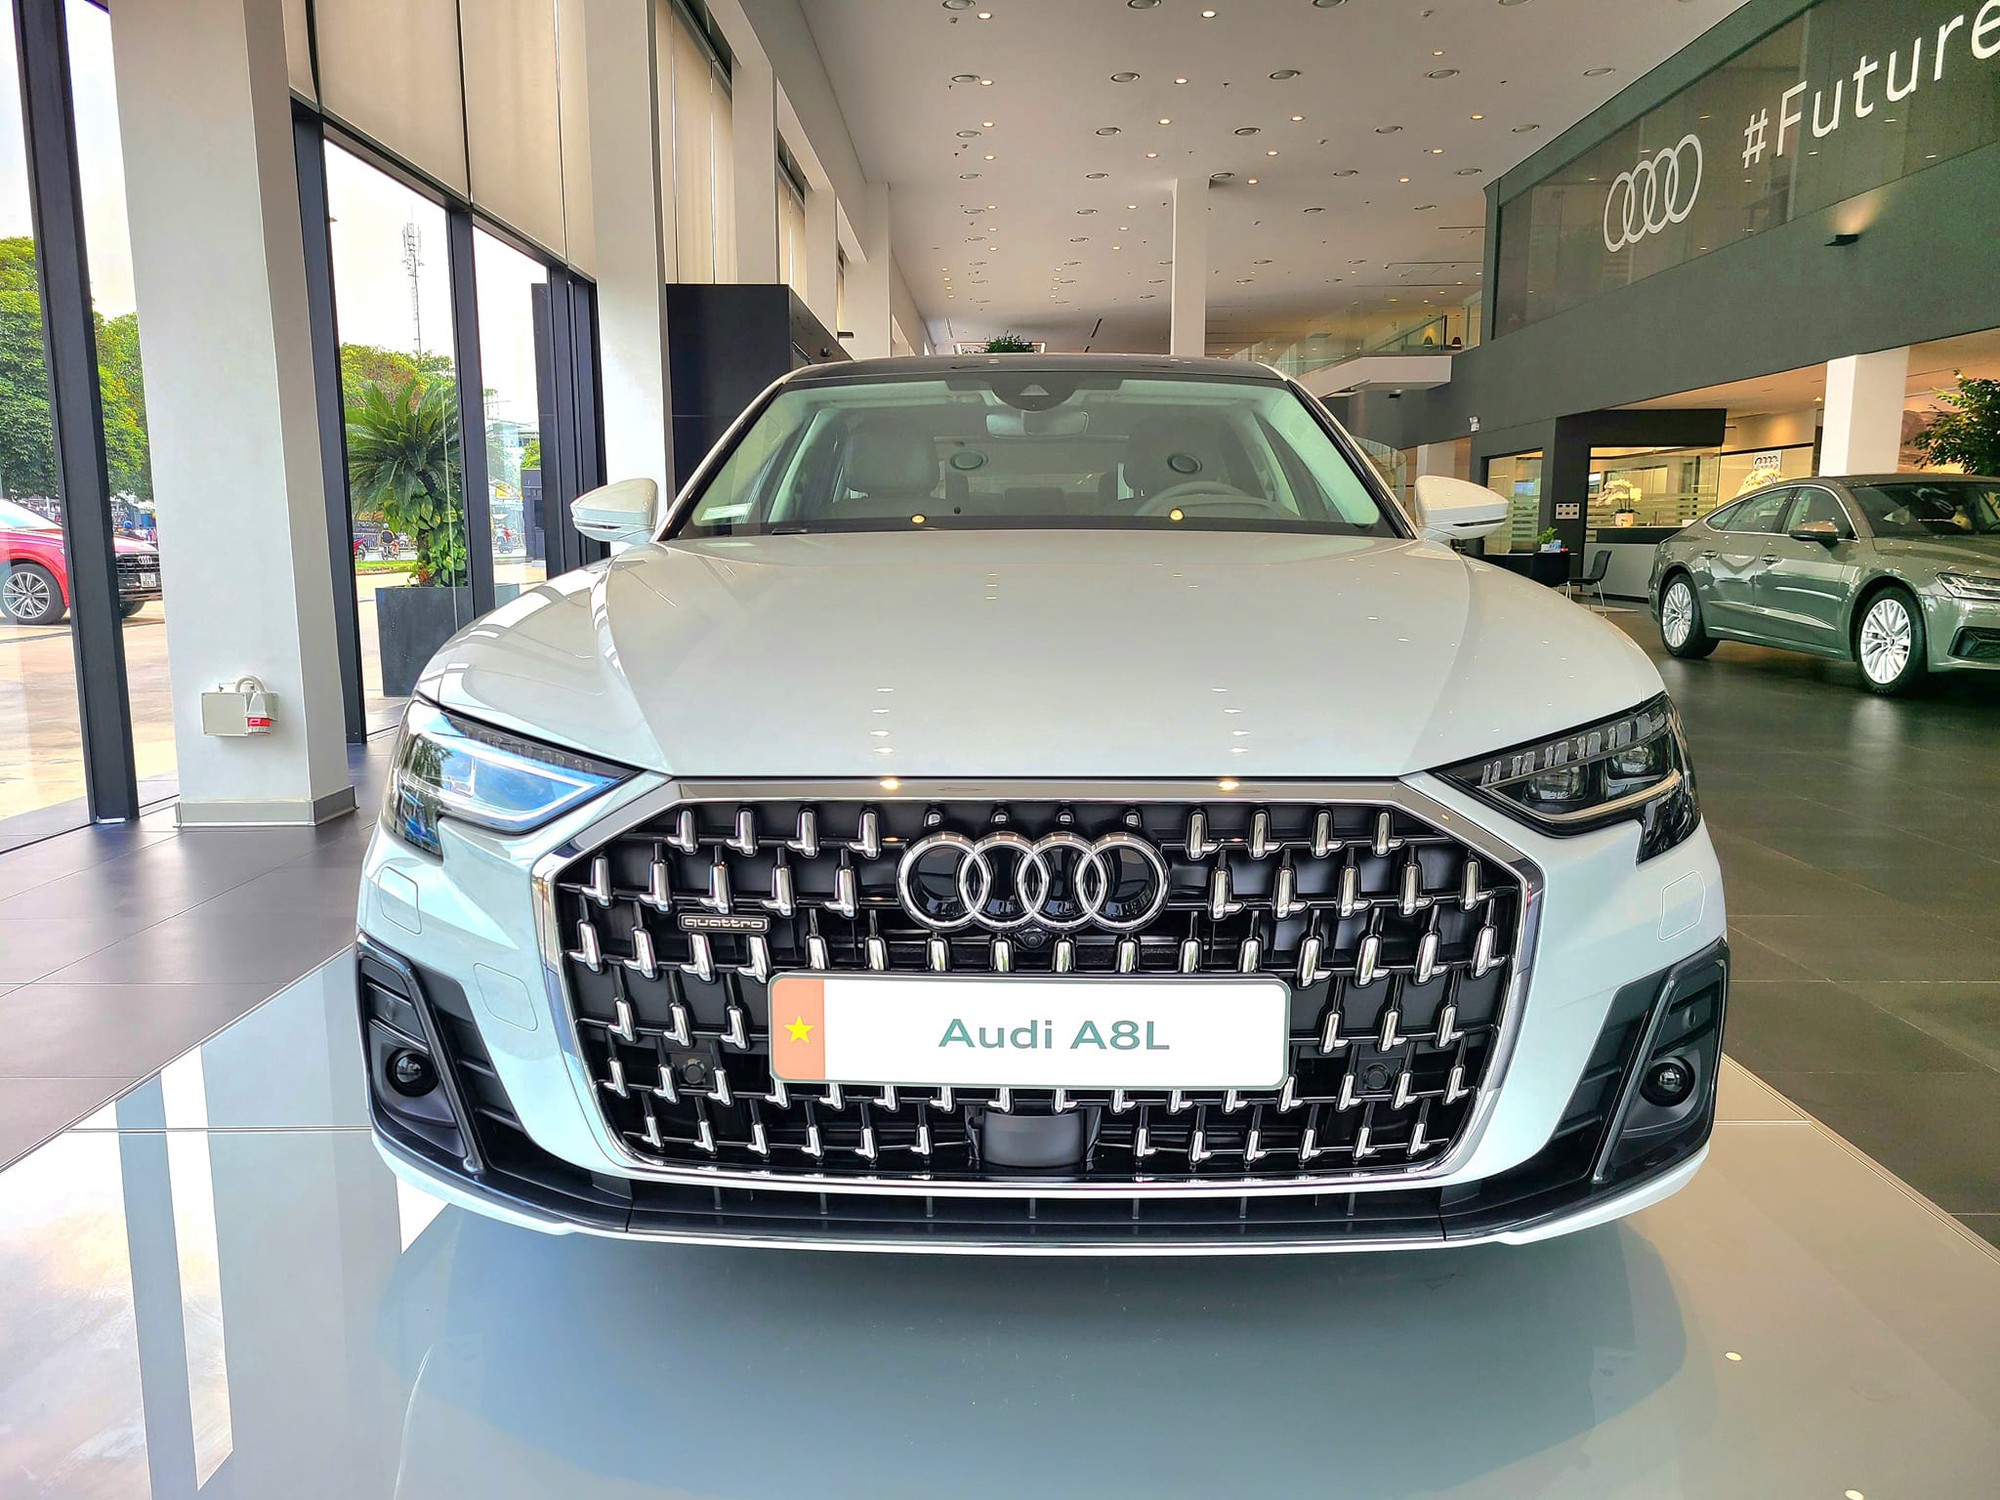 Audi A8L giảm giá chưa từng thấy tại đại lý: Khởi điểm 4,1 tỷ, sản xuất 2022, rẻ hơn hẳn 7-Series và S-Class- Ảnh 1.